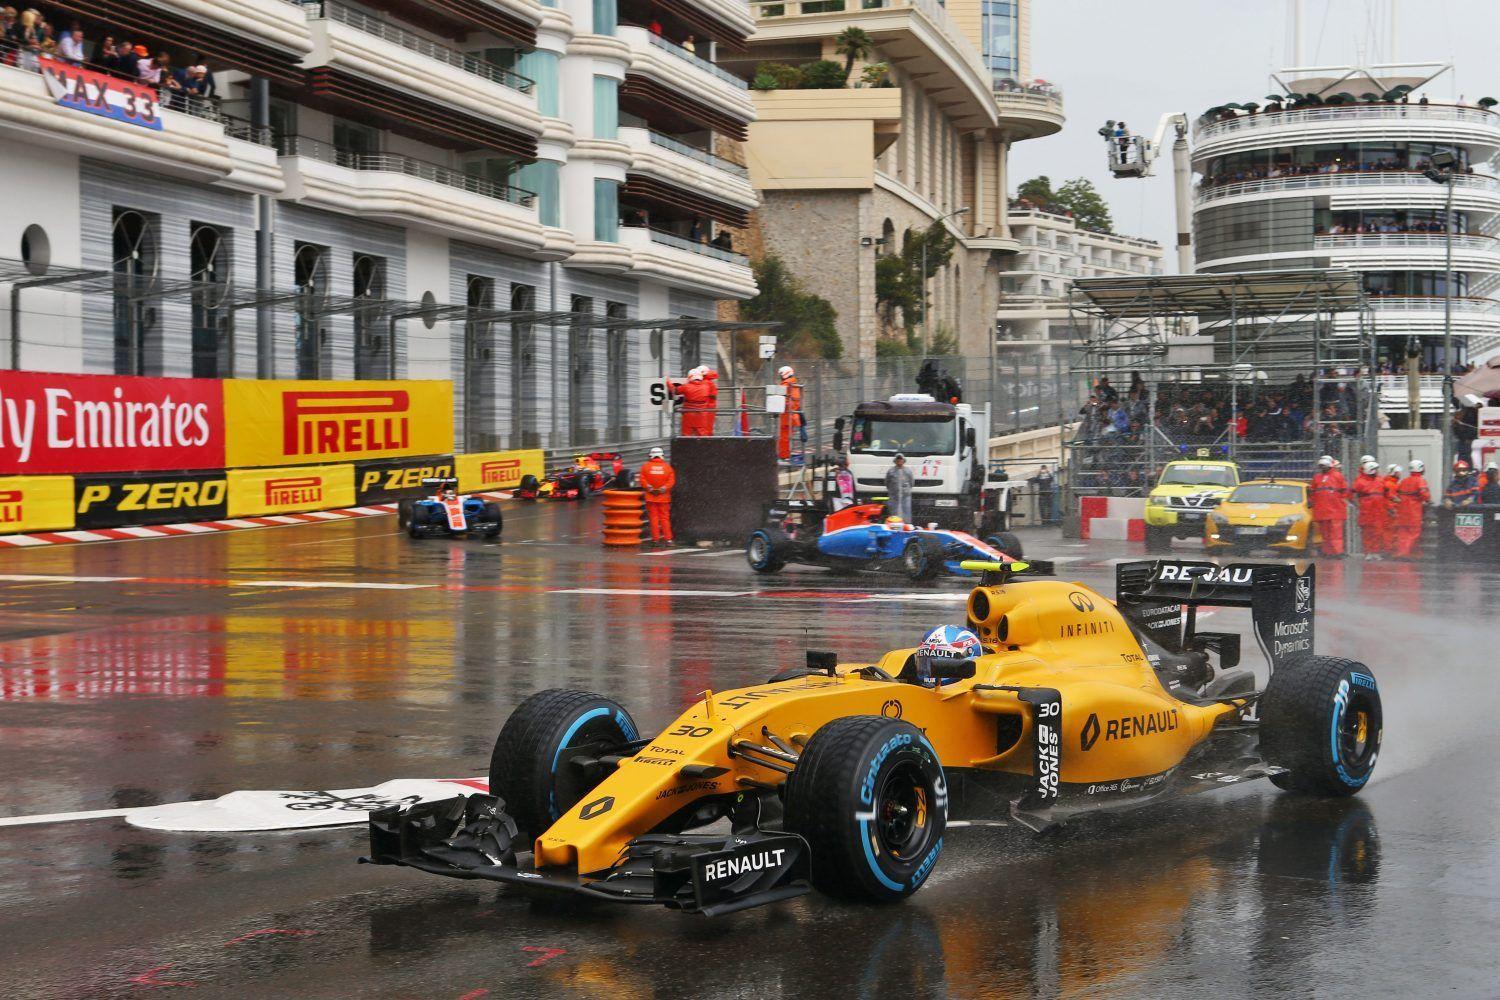 Wallpaper Monaco Grand Prix of 2016. Marco's Formula 1 Page